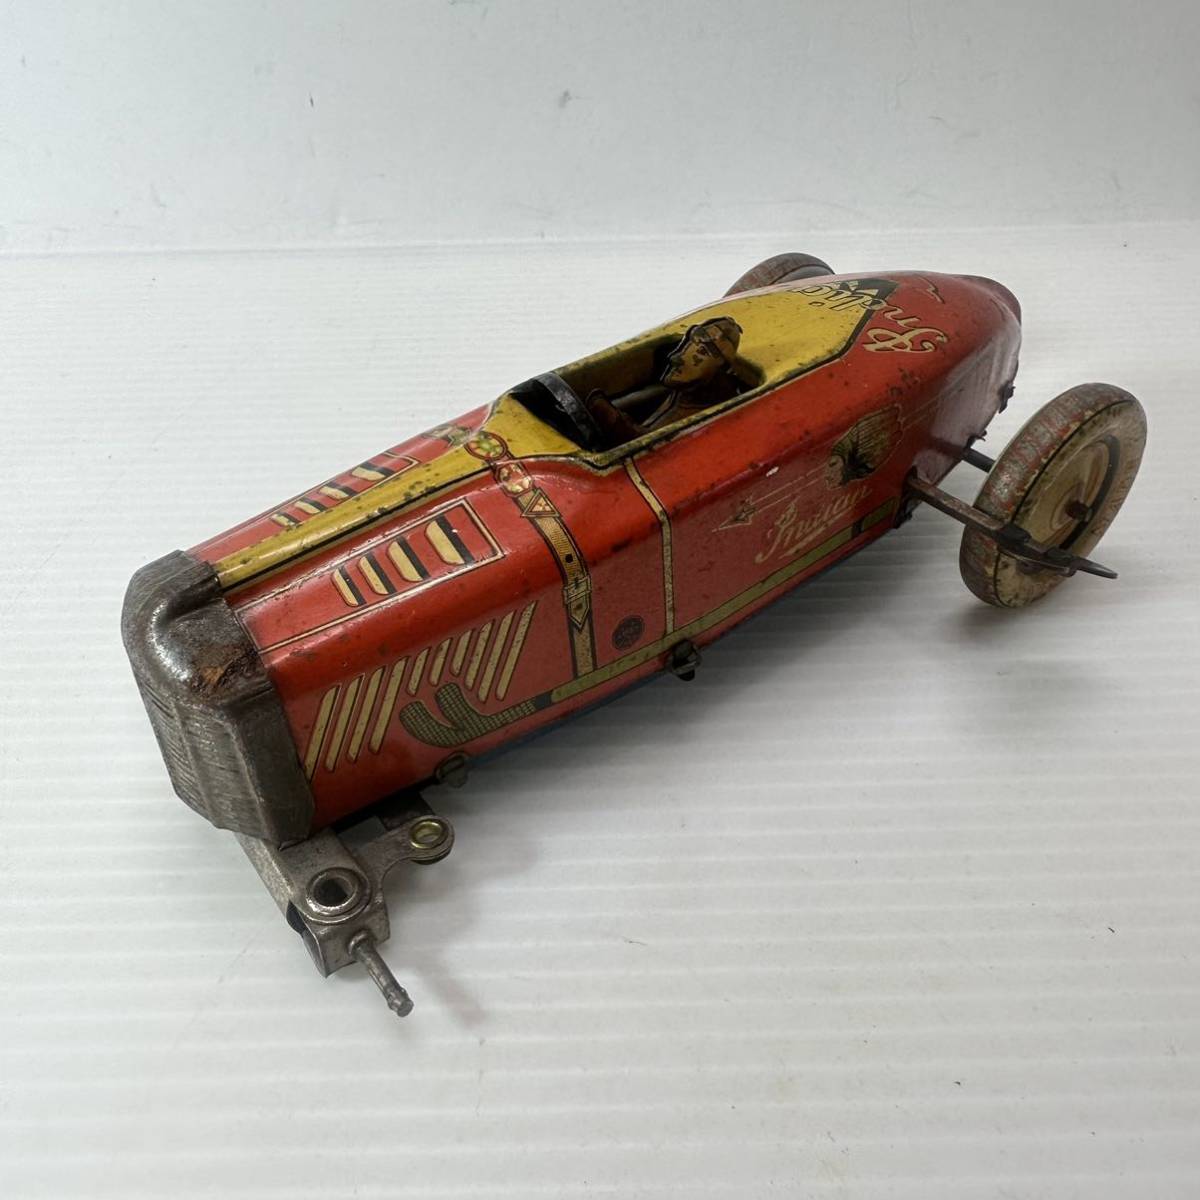 ブリキ製 ゼンマイ式 おもちゃ レーシングカー レースカー 車 レトロ ビンテージ 当時物 古玩具 古道具 インテリア コレクション ジャンク